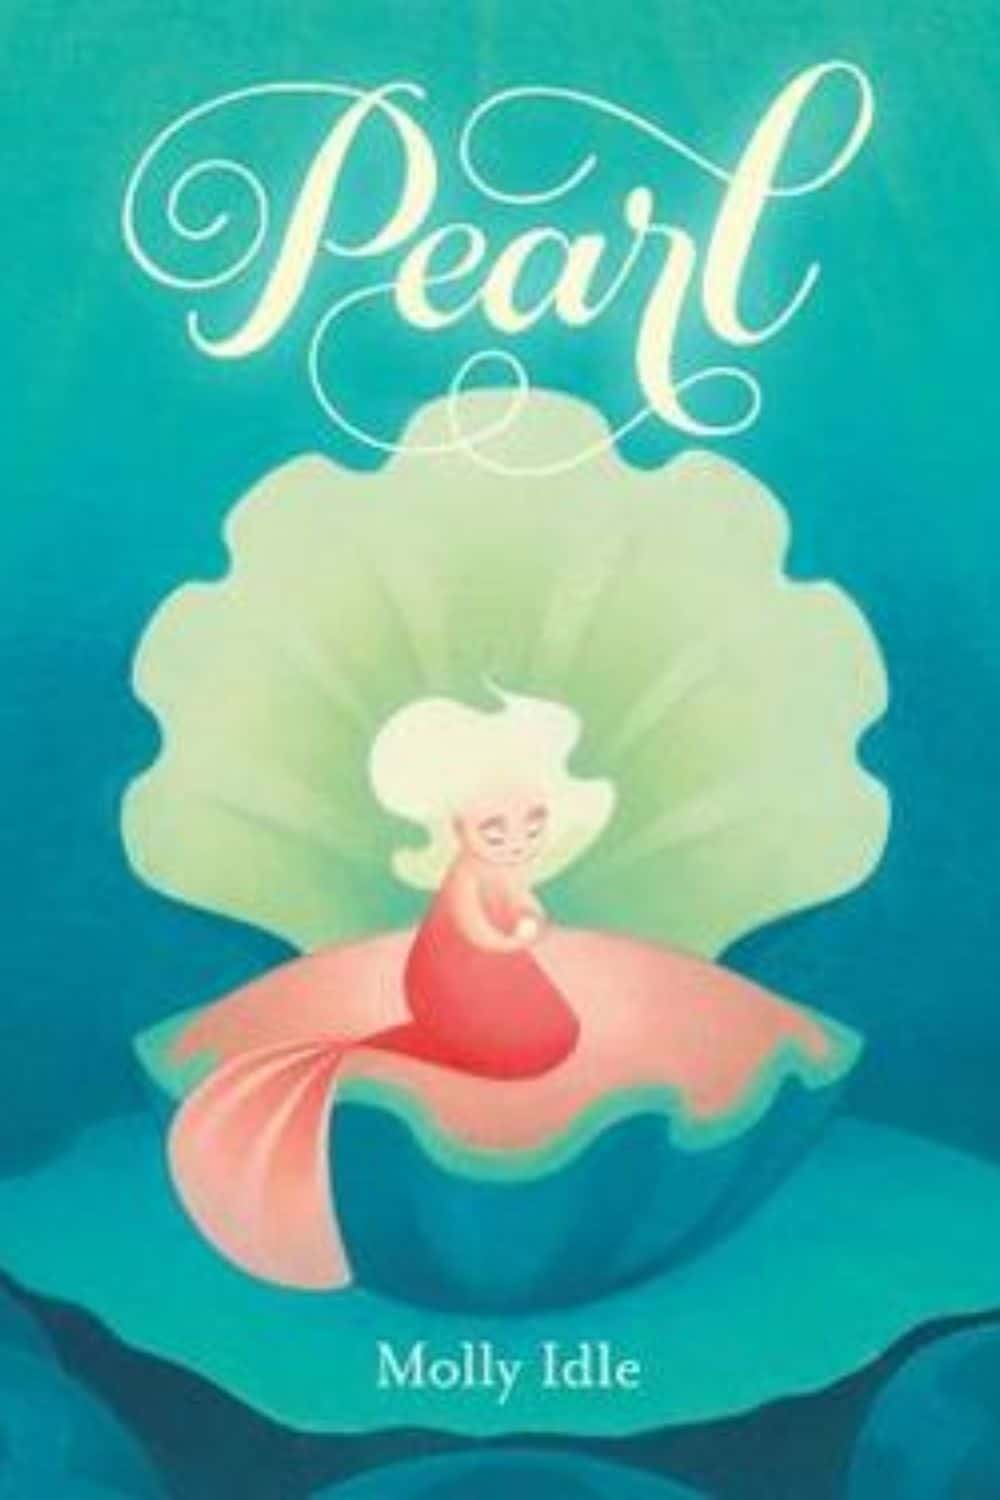 Libros encantadores sobre sirenas para niños (Pearl de Molly Idle)